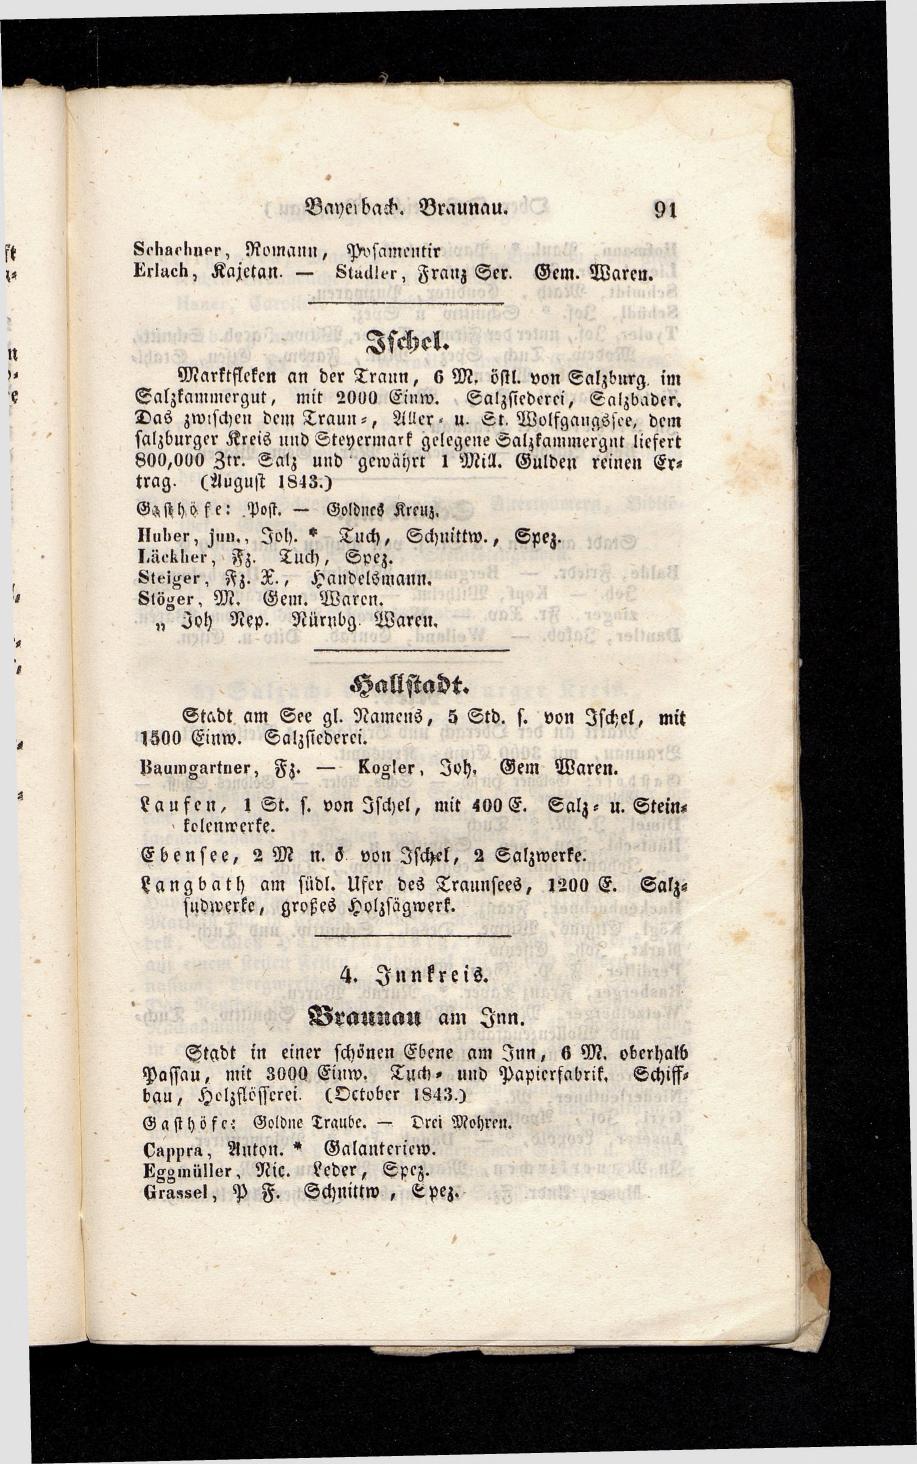 Grosses Adressbuch der Kaufleute. No. 13. Oesterreich ober u. unter der Enns 1844 - Seite 95